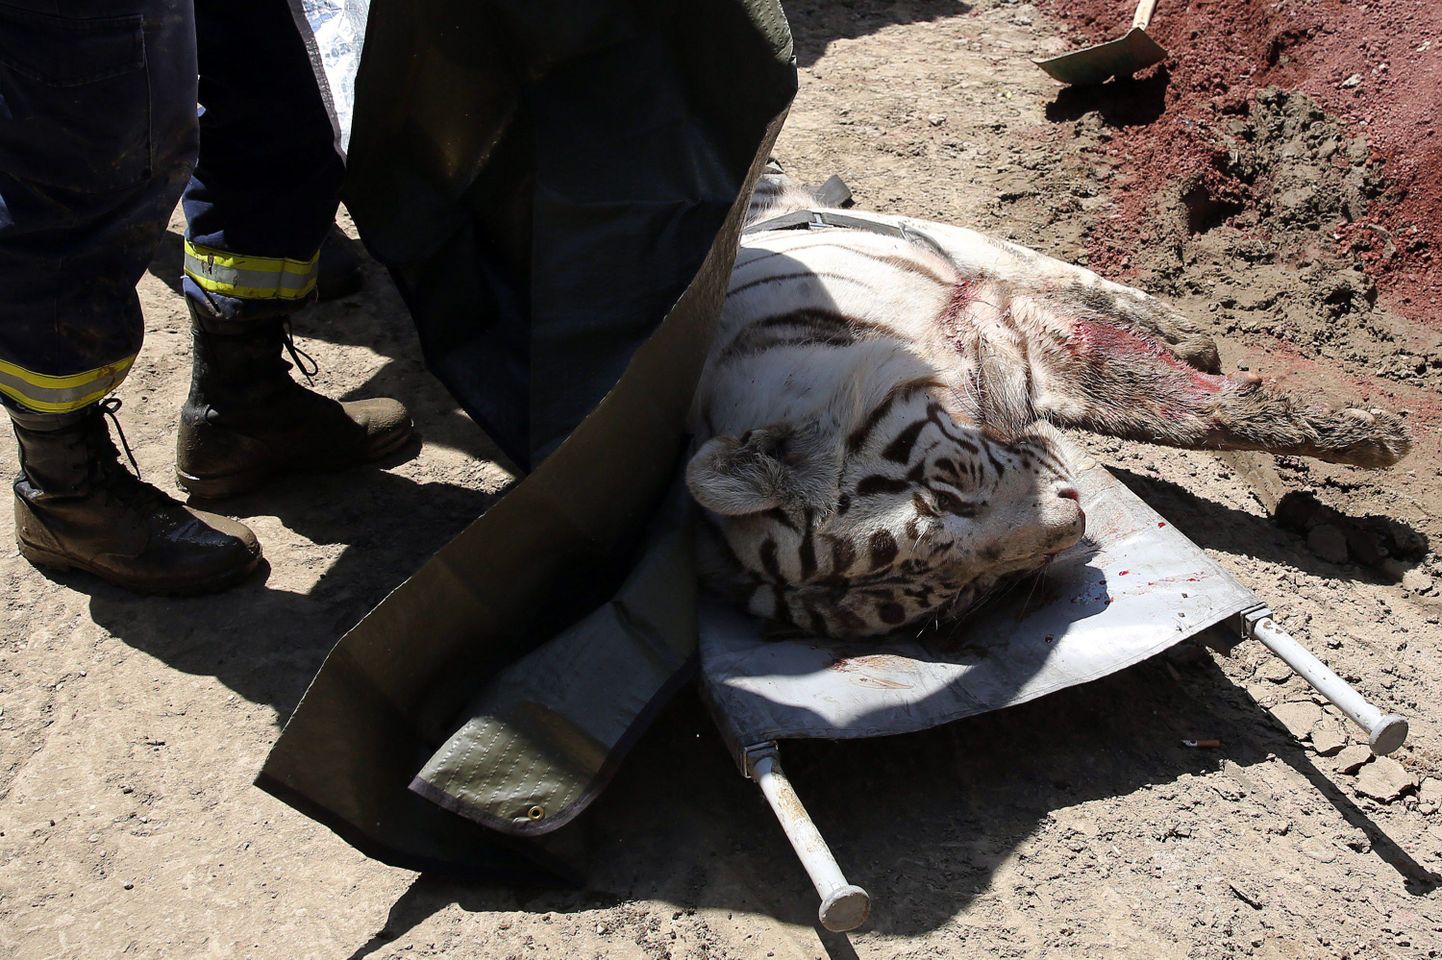 Pildiloleva tiigri tappis Gruusia politsei pärast seda, kui too oli surnuks rappinud juhusliku linnaelaniku.